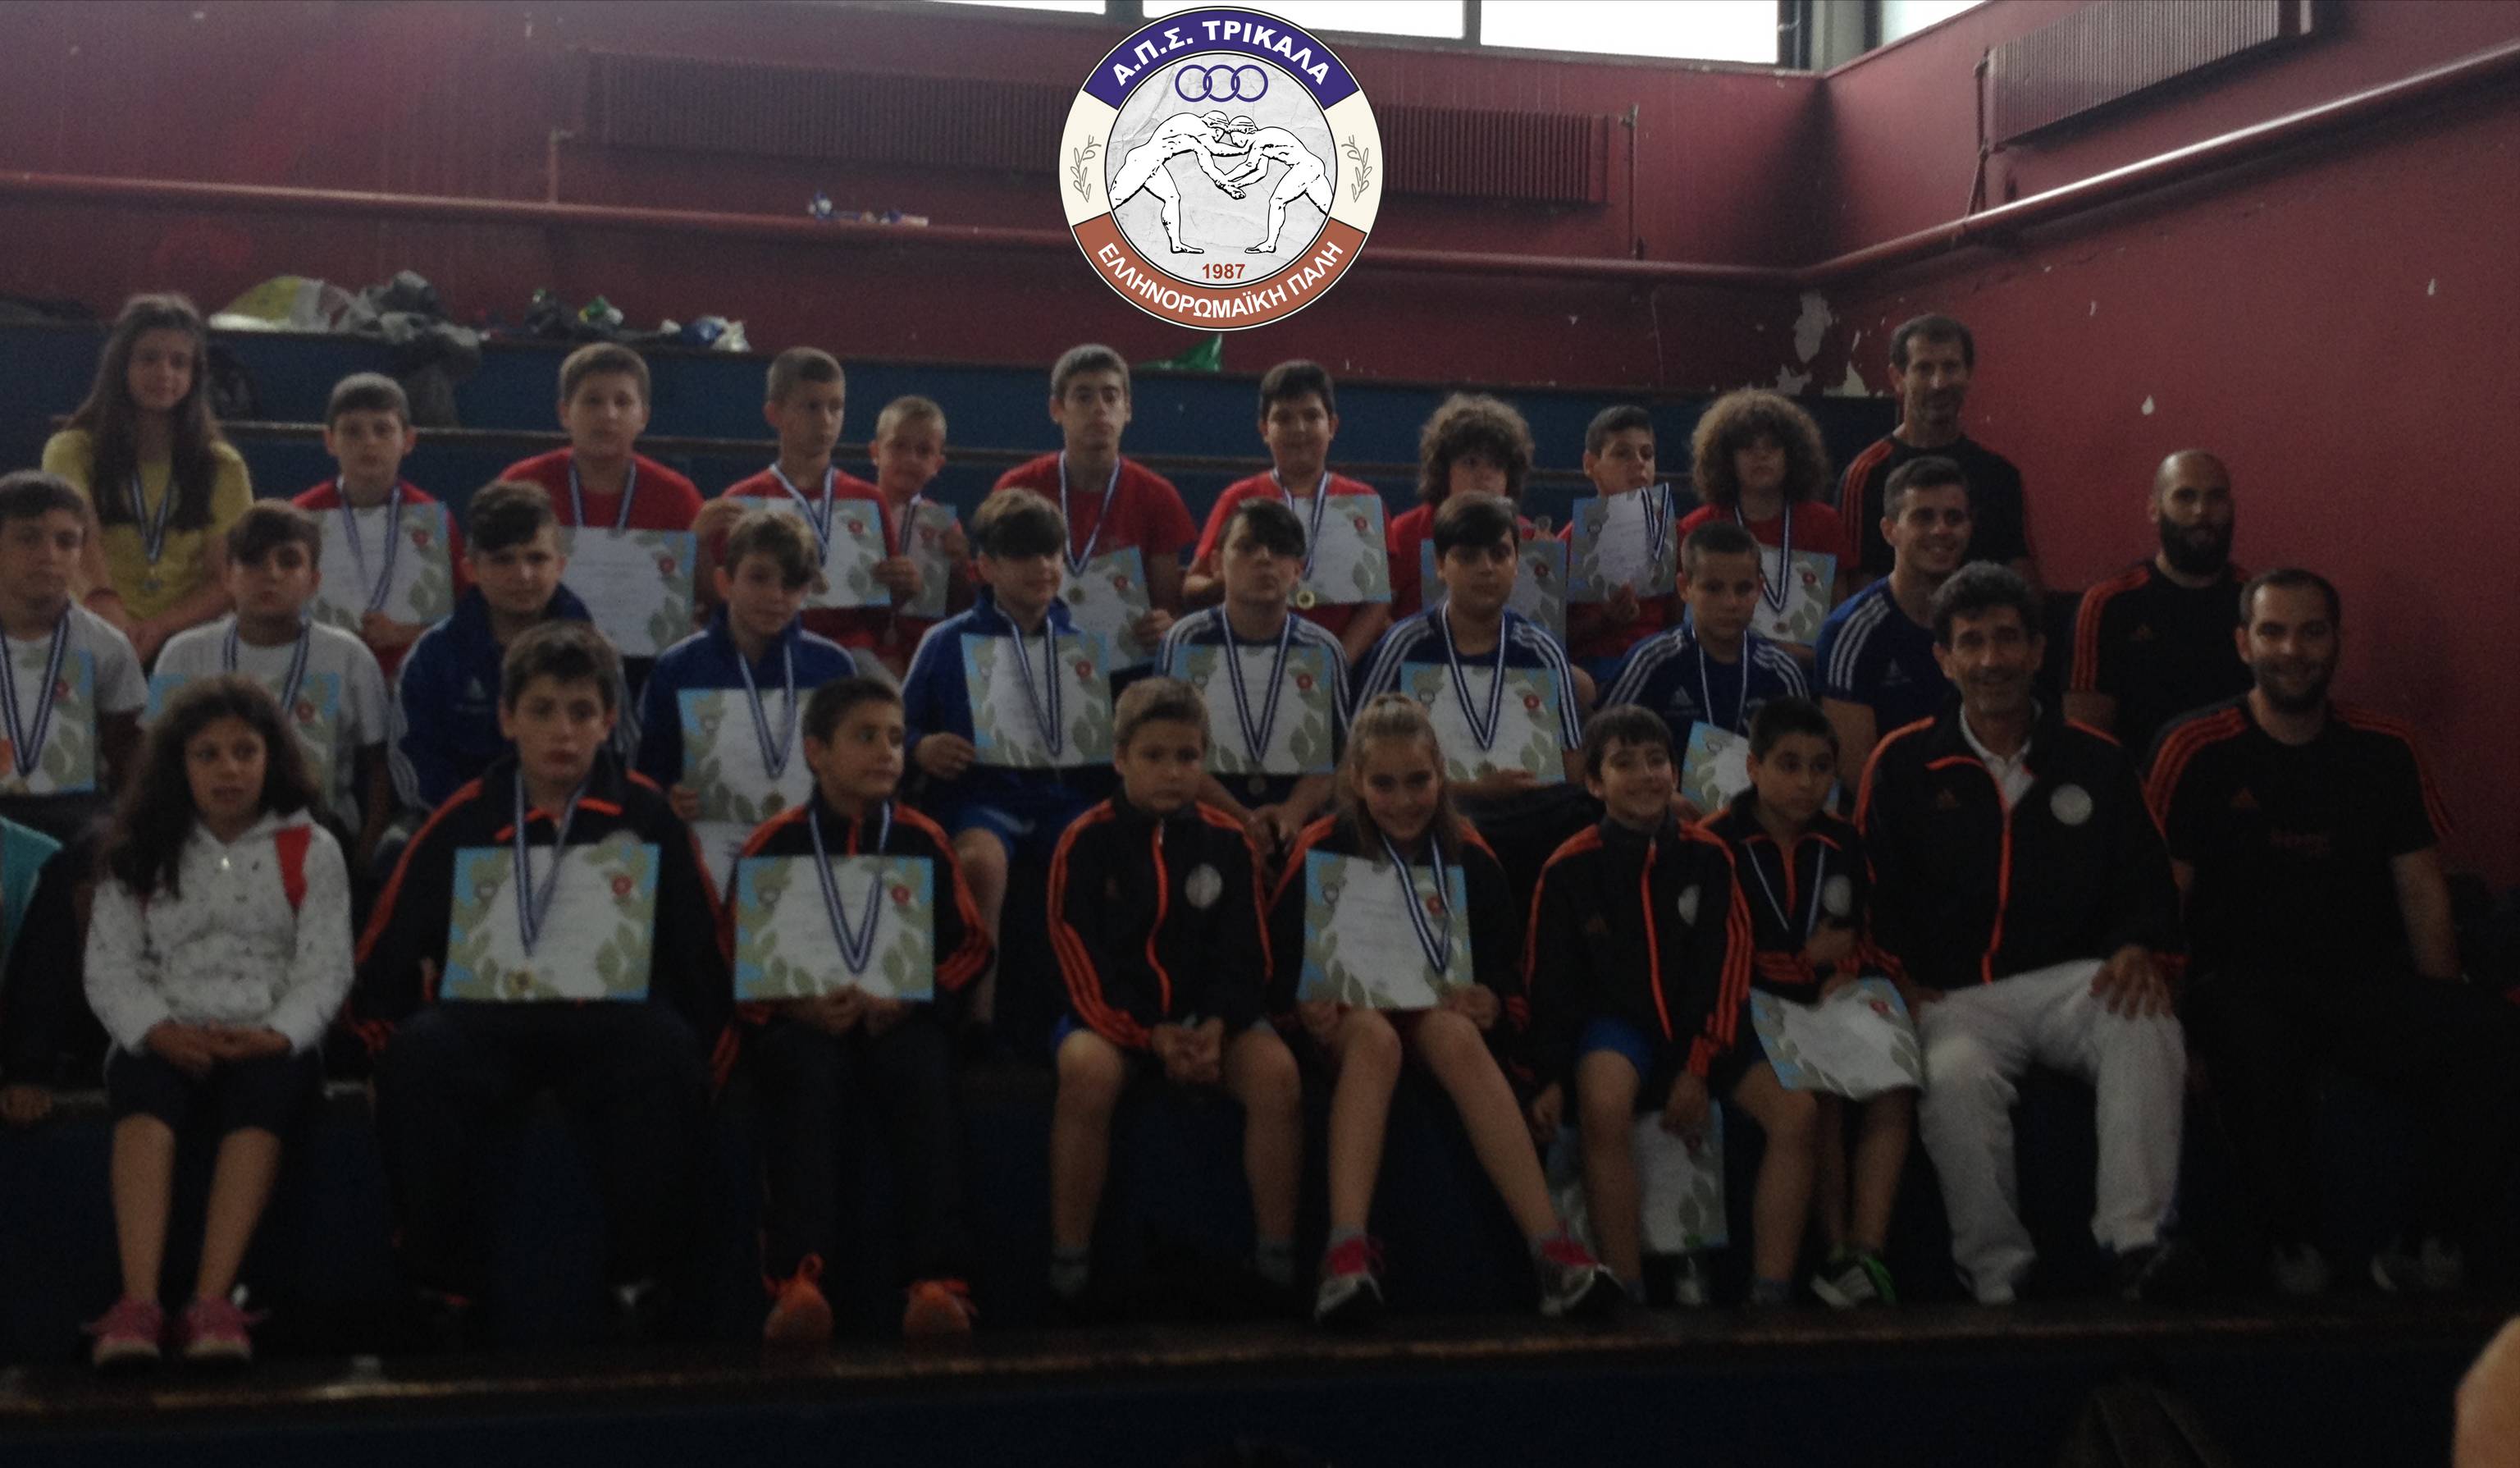 Με 25 μετάλλια στο πανελλήνιο παιδικό πρωτάθλημα οι μικροί αθλητές του ΑΠΣ Τρίκαλα